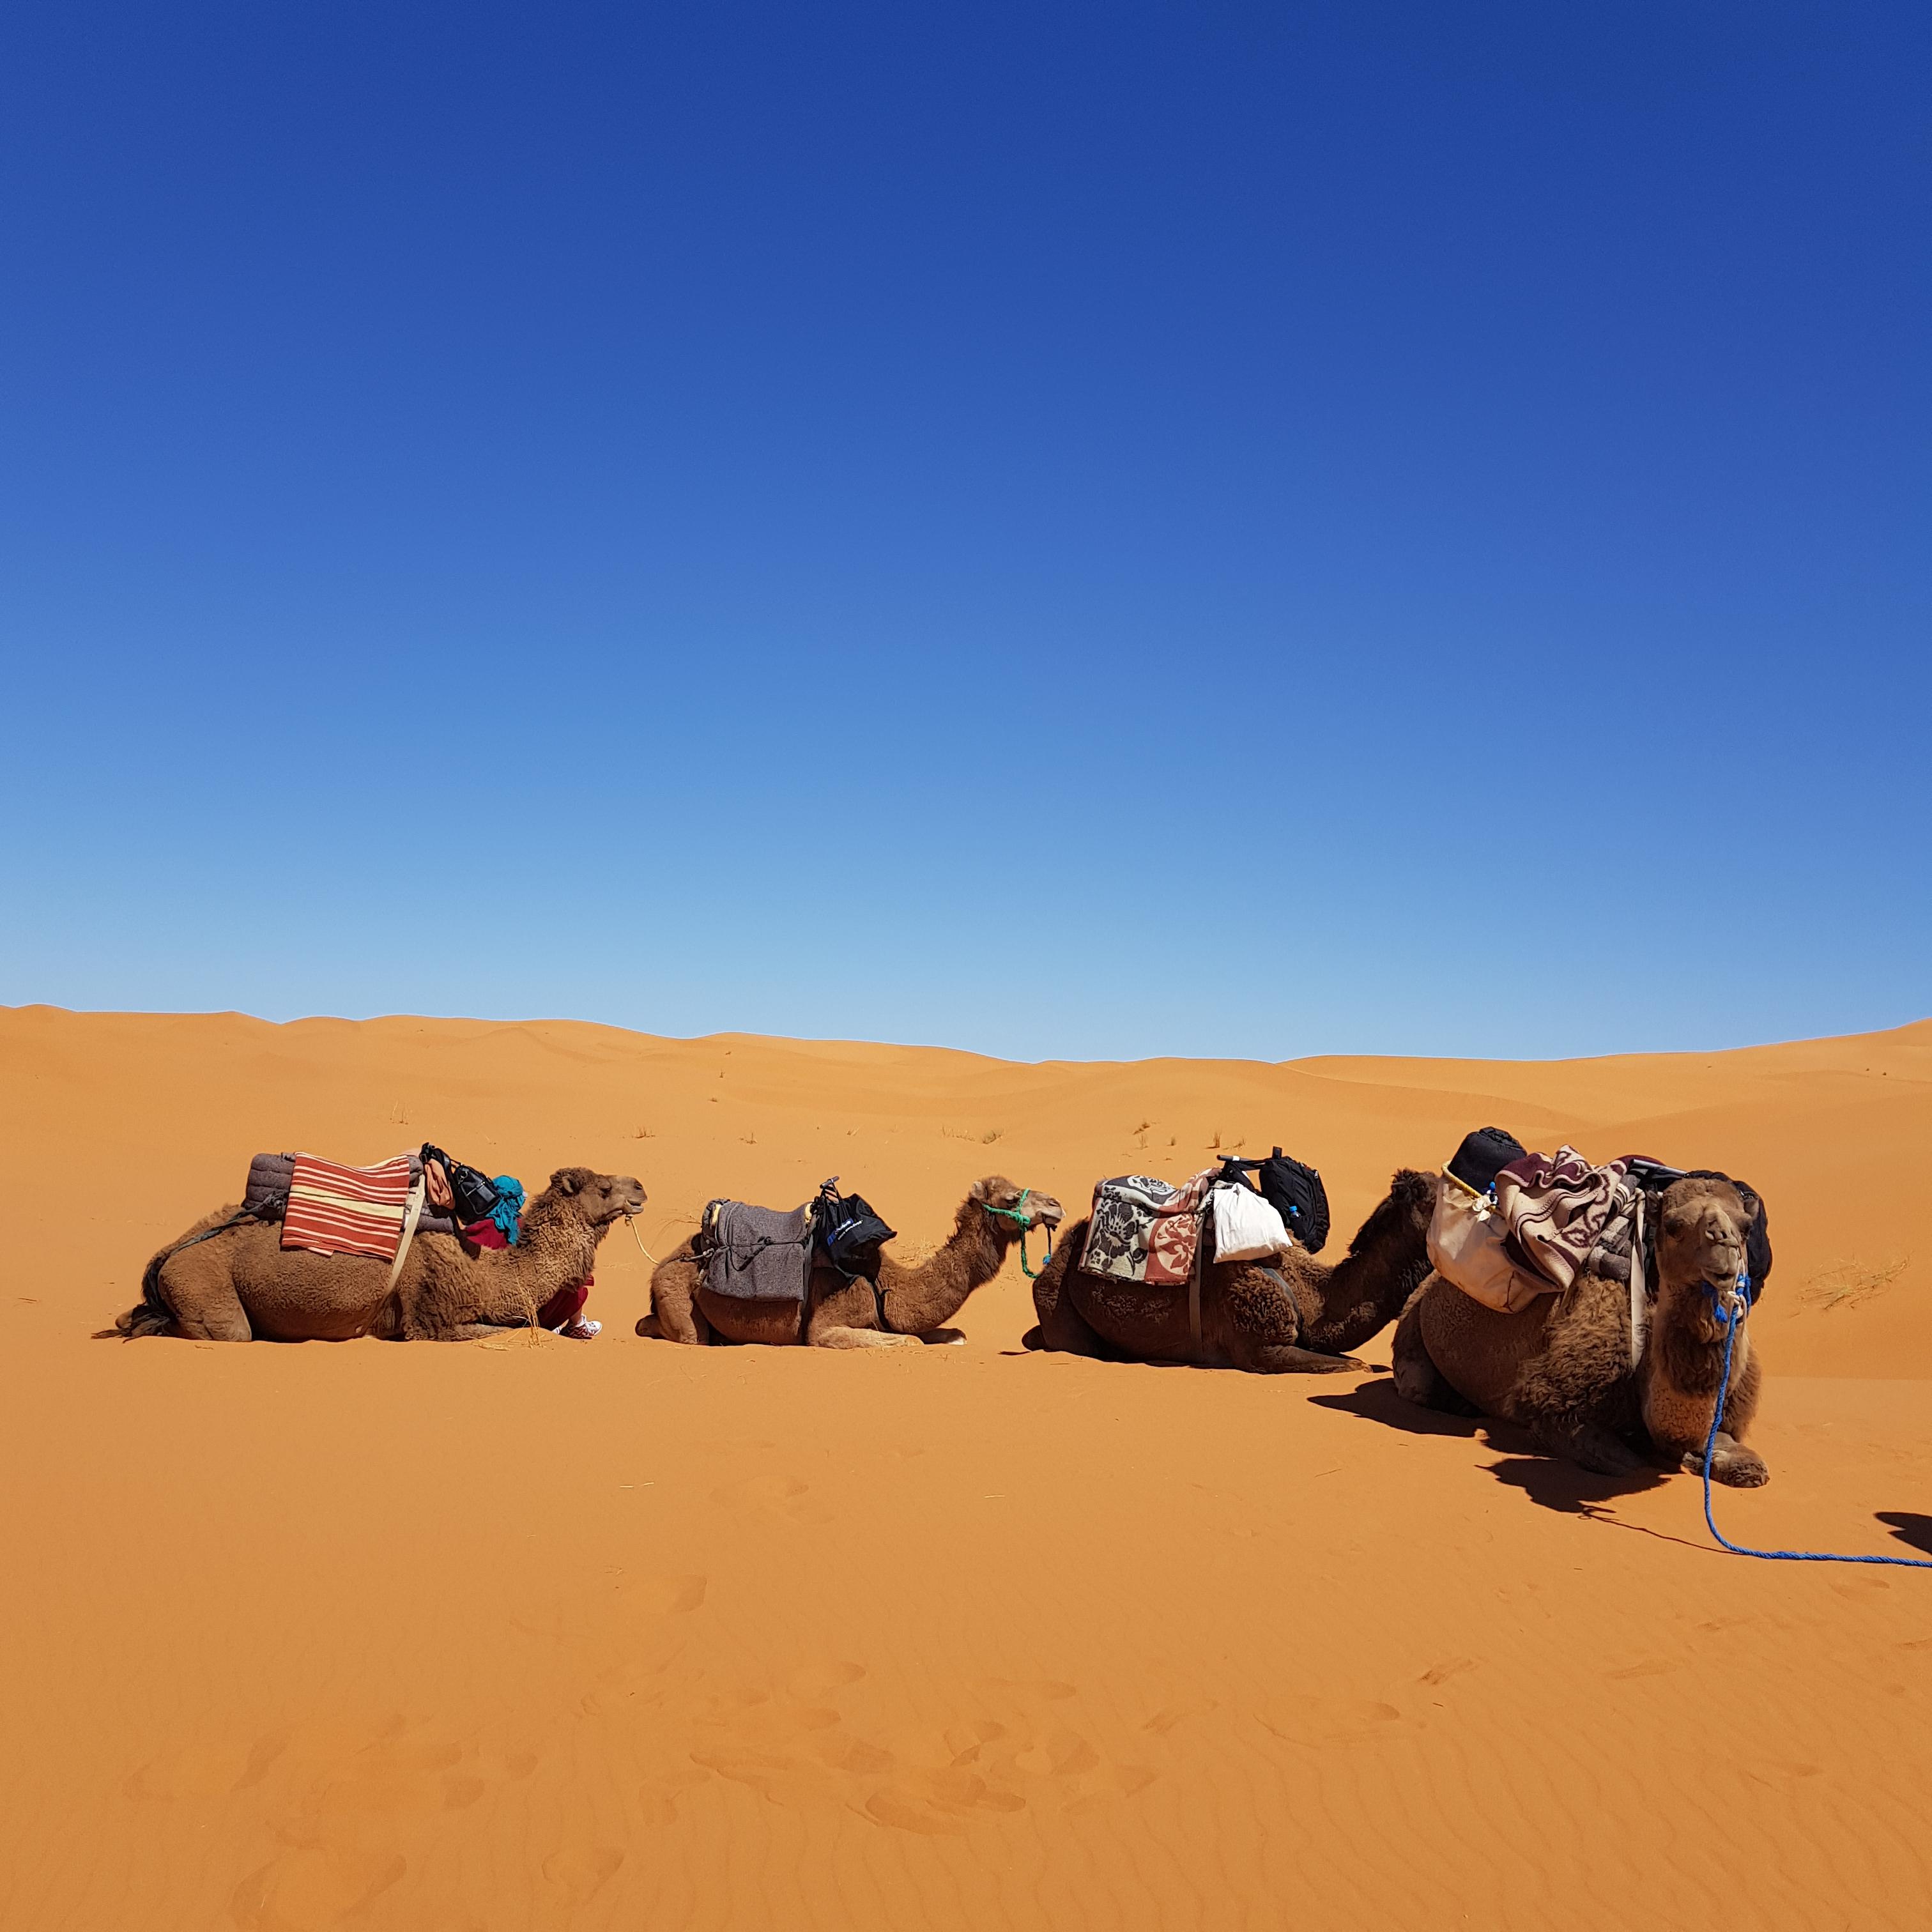 사막에 누워있는 낙타 사진